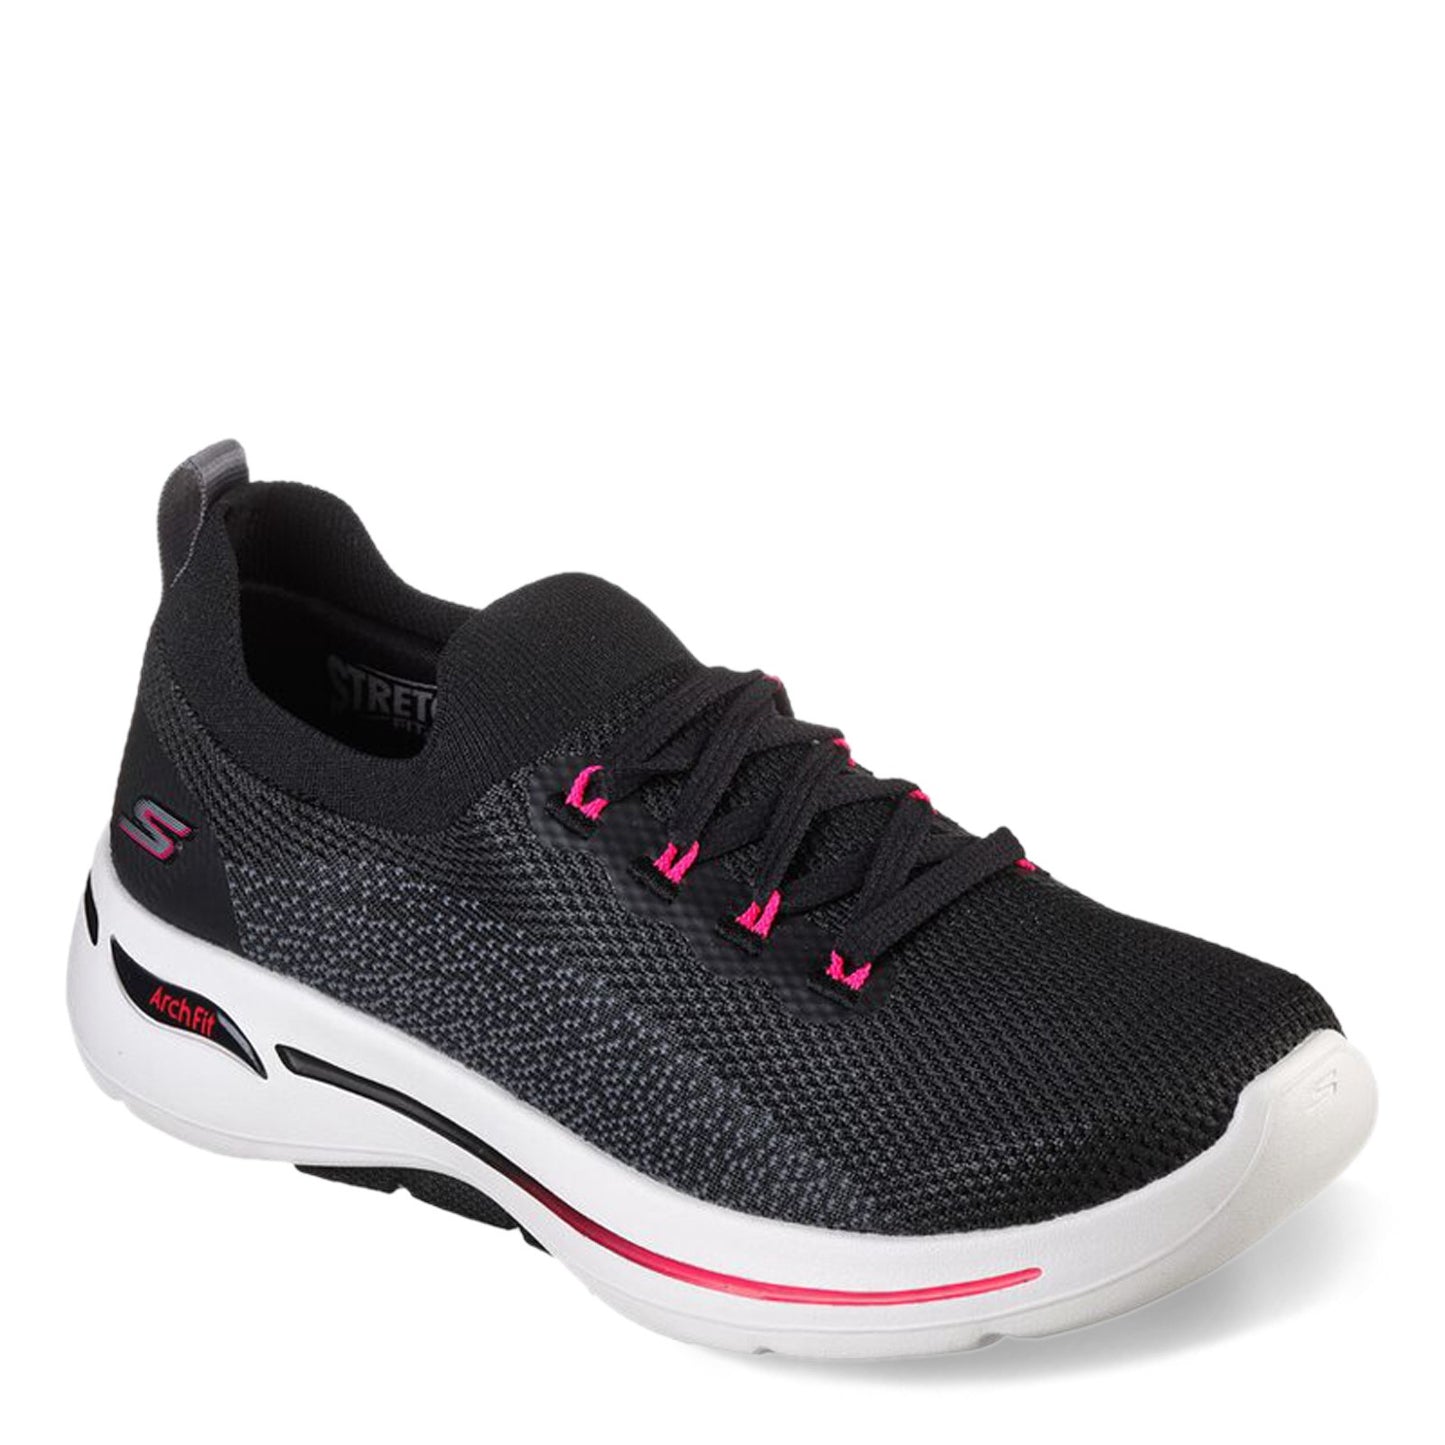 Peltz Shoes  Women's Skechers Performance GO WALK Arch Fit - Clancy Sneaker BLACK PINK 124863-BKHP